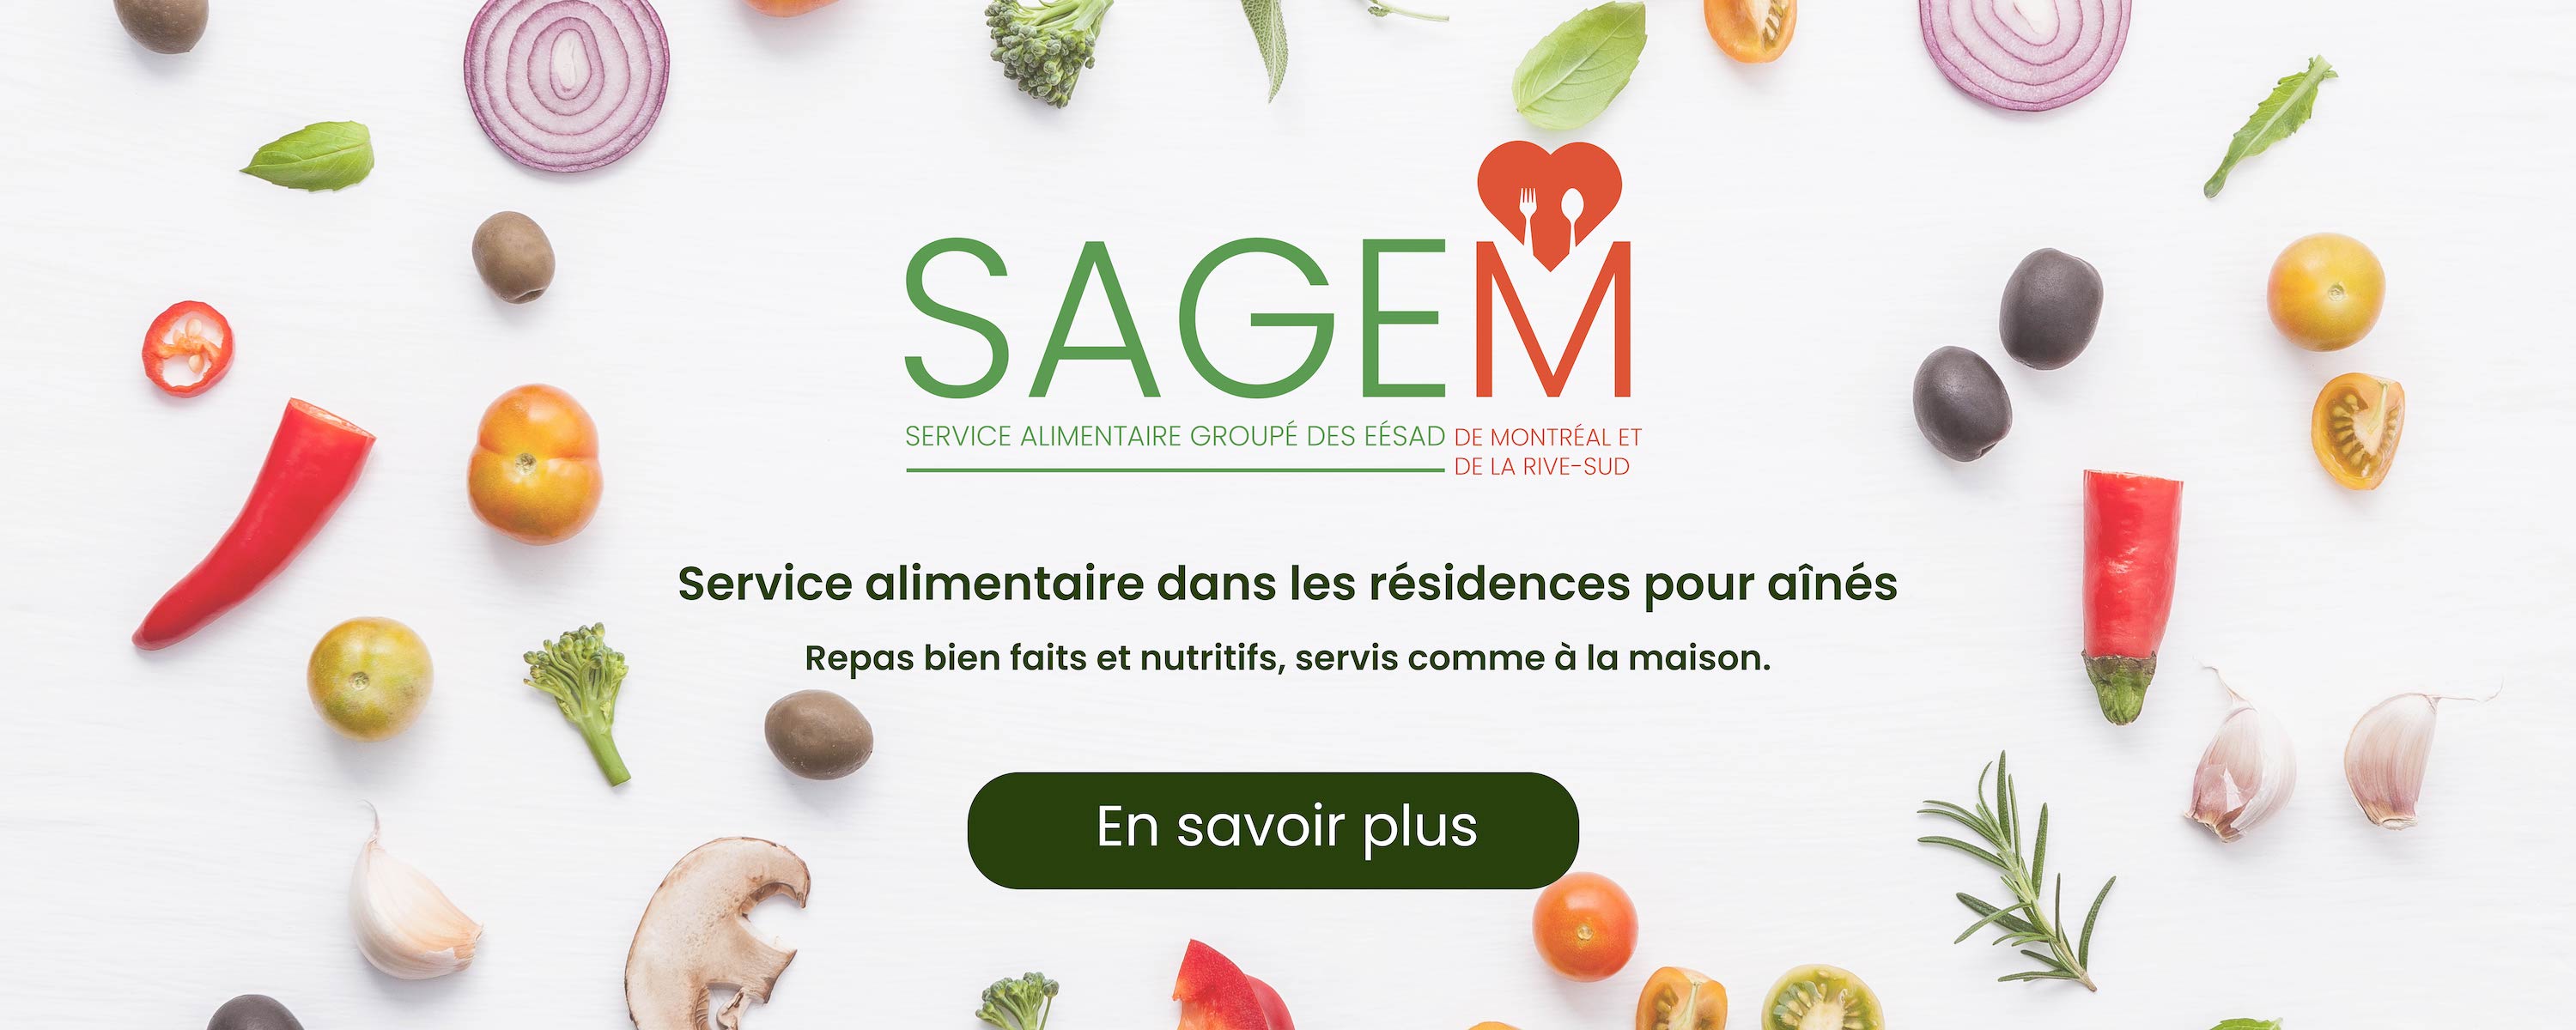 Service alimentaire dans les résidences pour aînés. Lien sur l'image pour accéder au site web de SAGEM.